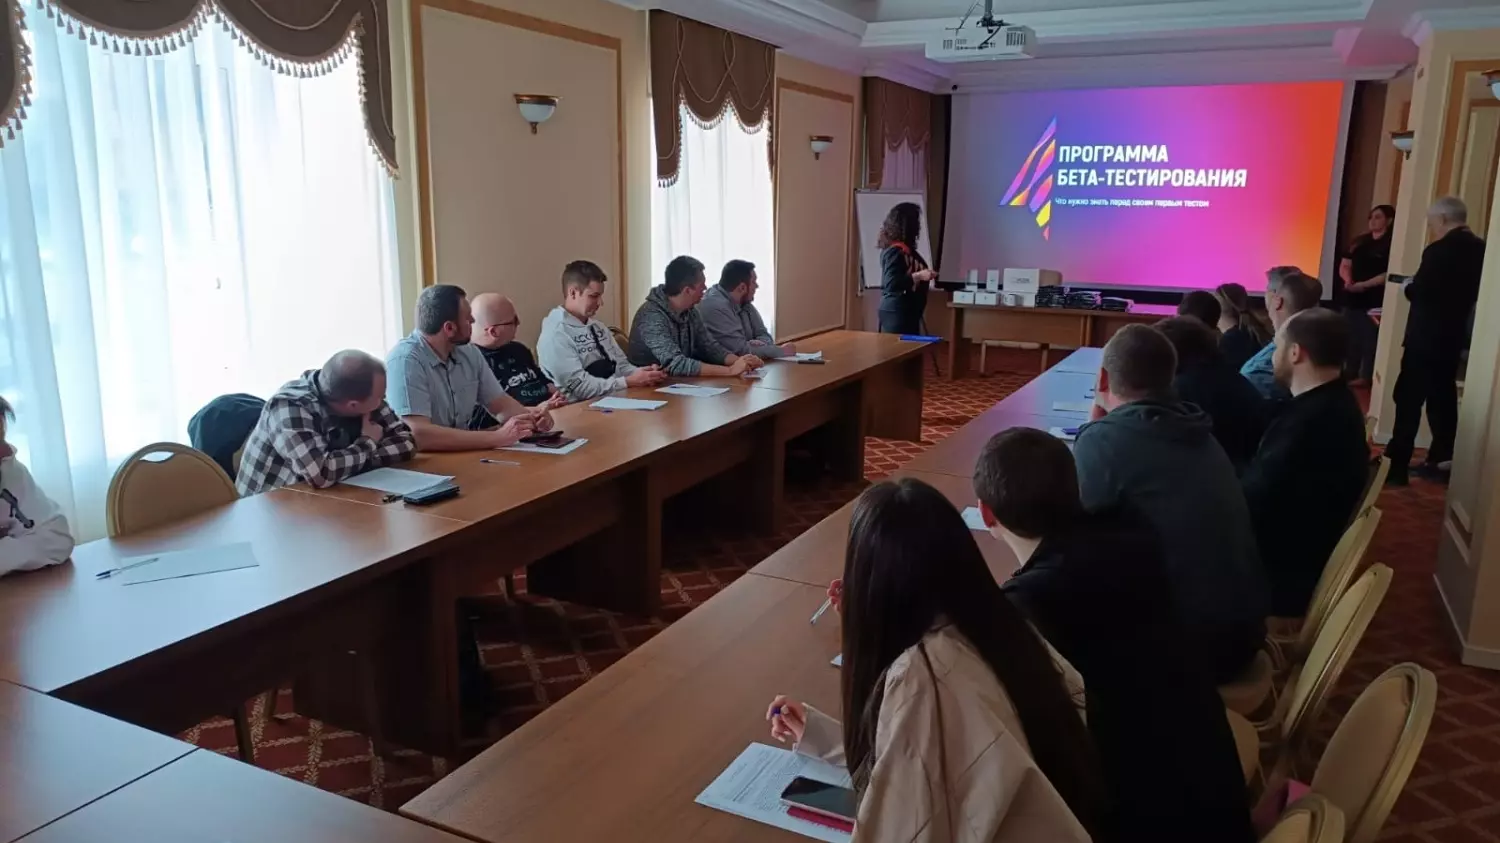 В Волгограде к программе Бета-тестирования присоединилось 22 человека